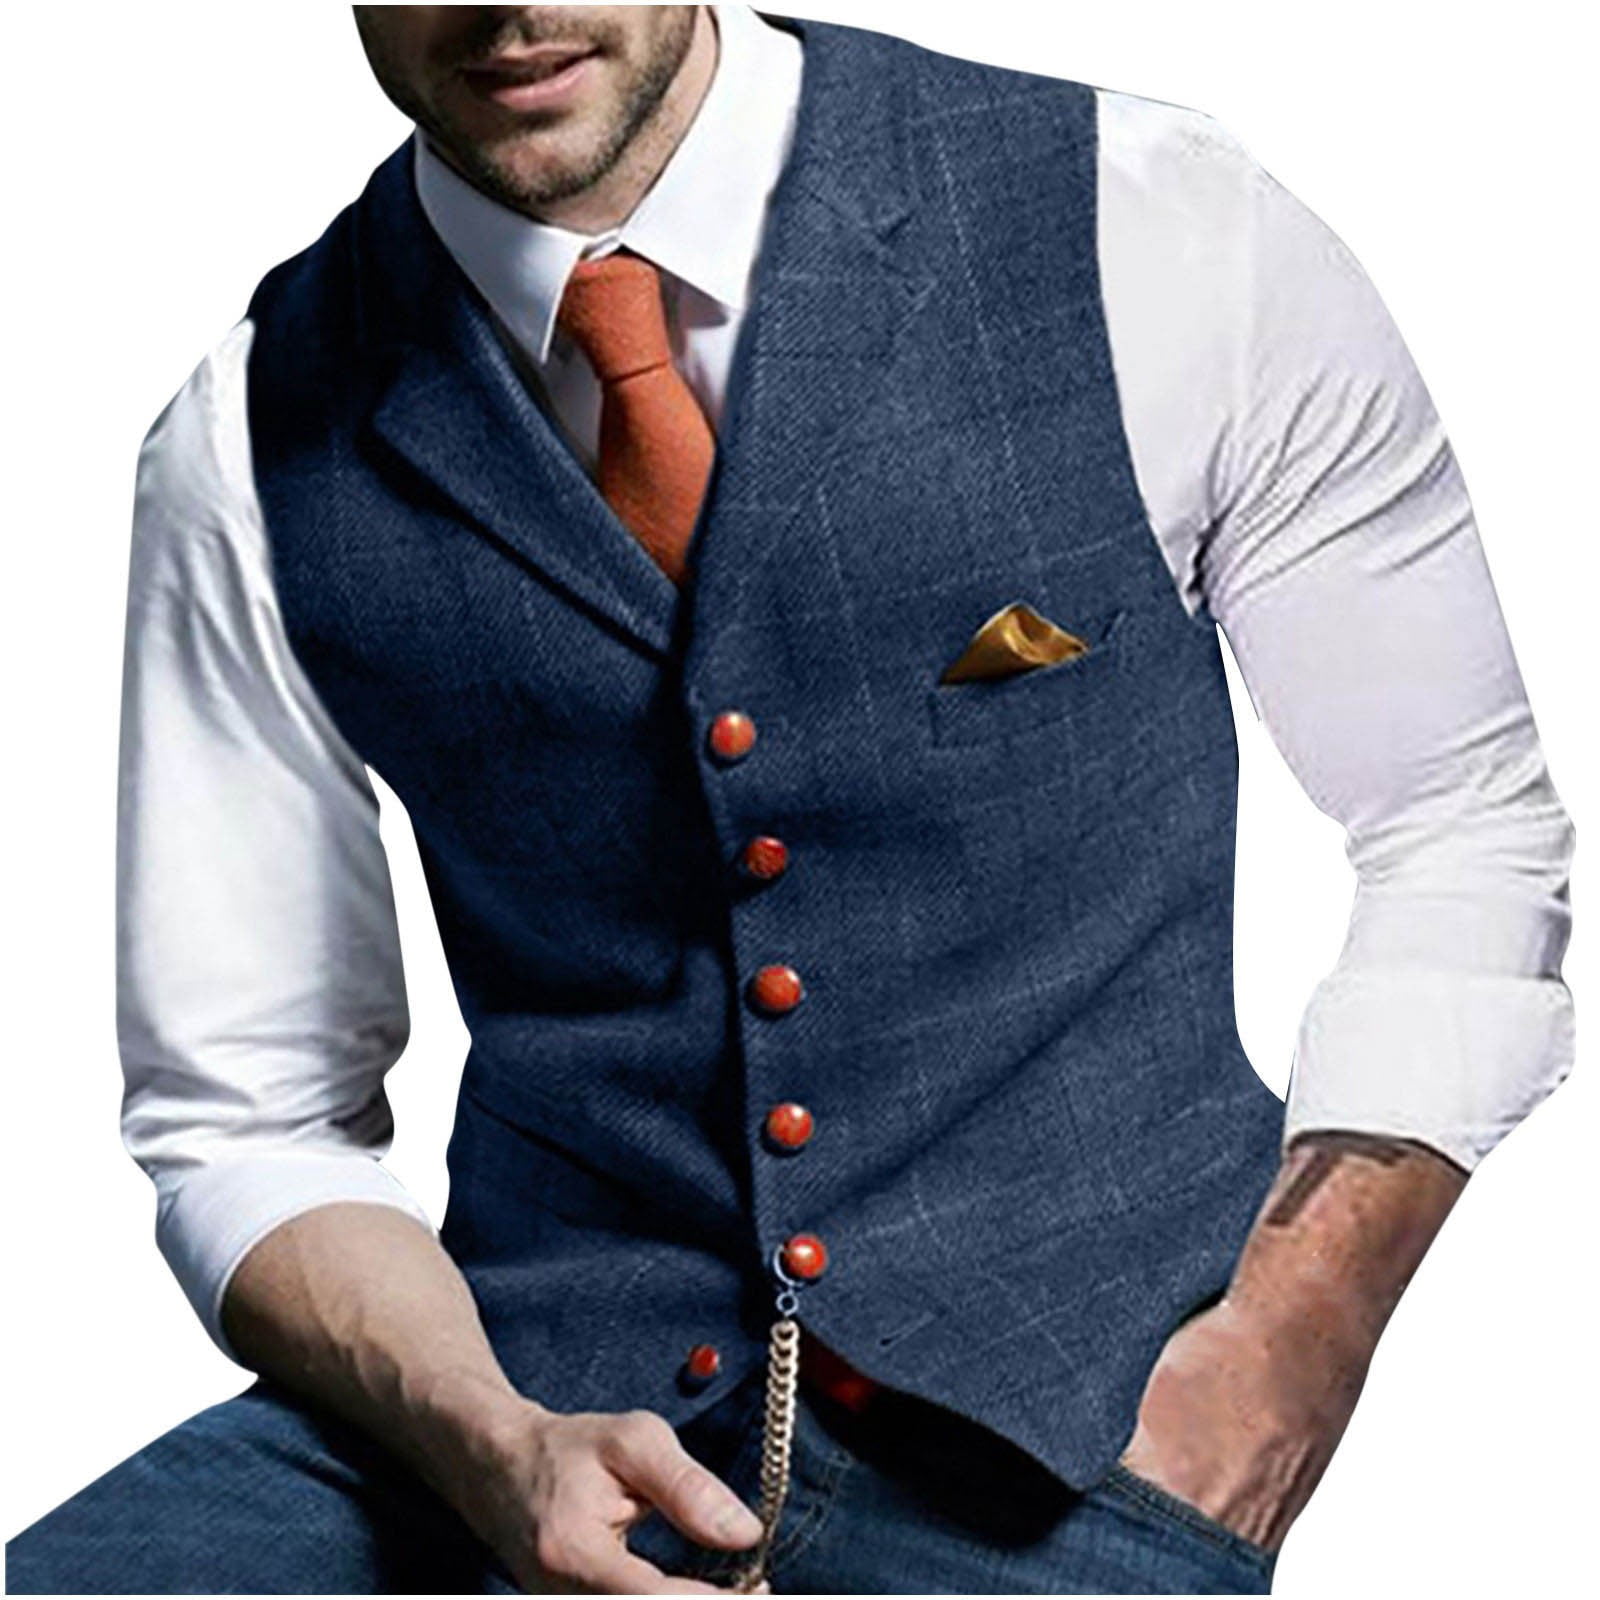 Buy Routeen Black Tuxedo Waistcoat Suit - Suits for Men 5350199 | Myntra